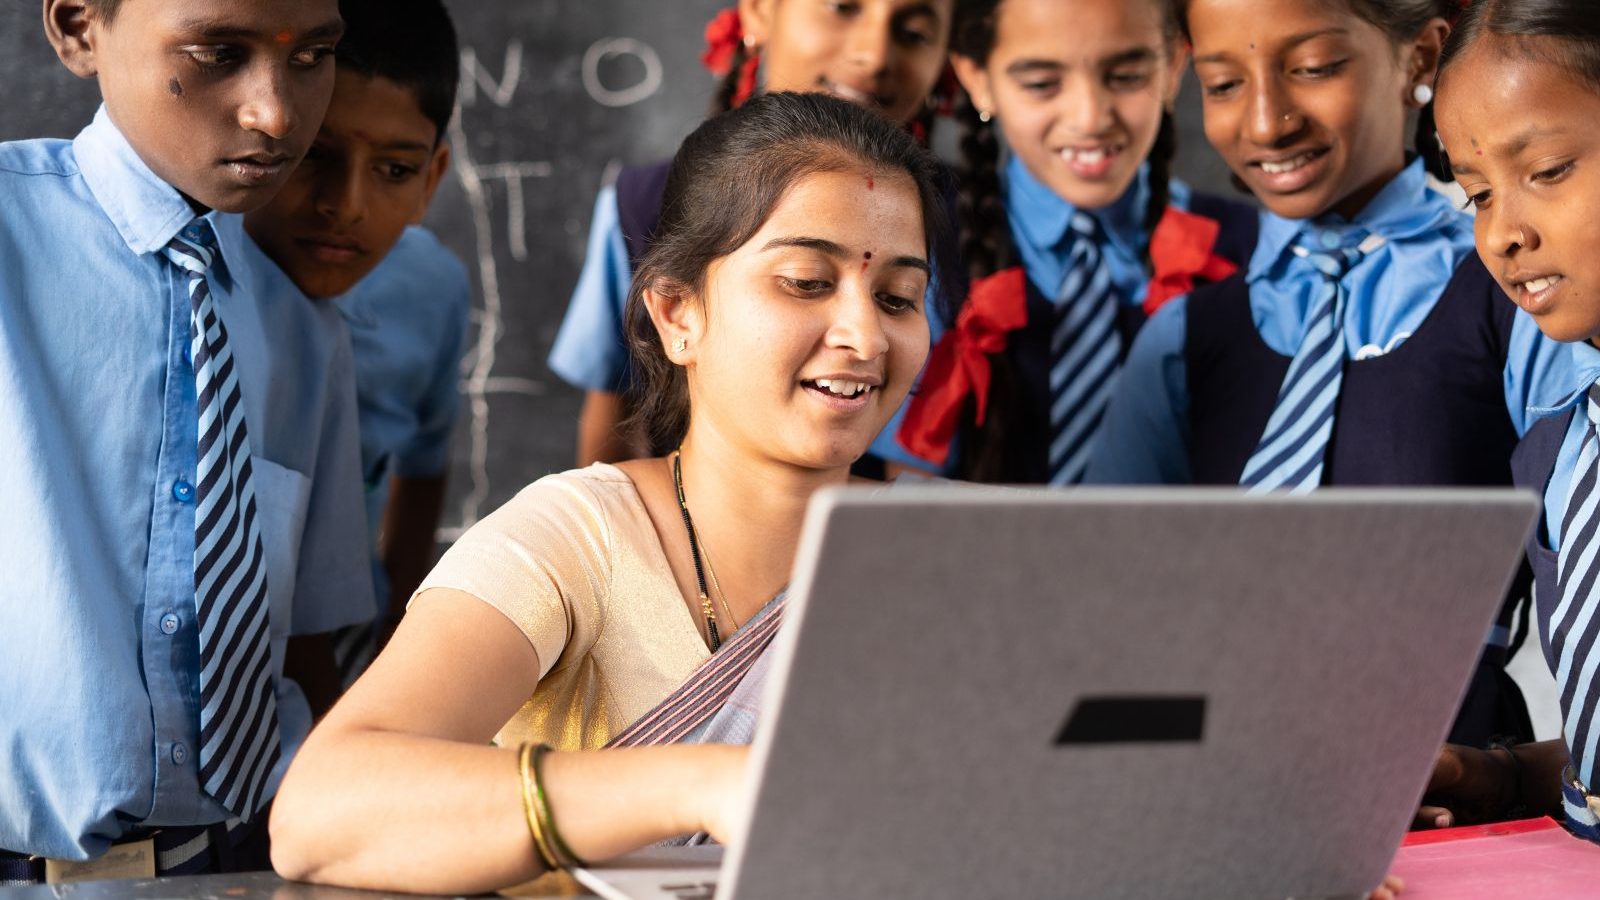 वैदिक गणित, महाभारत और कौटिल्य: शिक्षकों को नए मानदंडों के तहत भारत के समृद्ध अतीत के बारे में प्रशिक्षित किया जाएगा